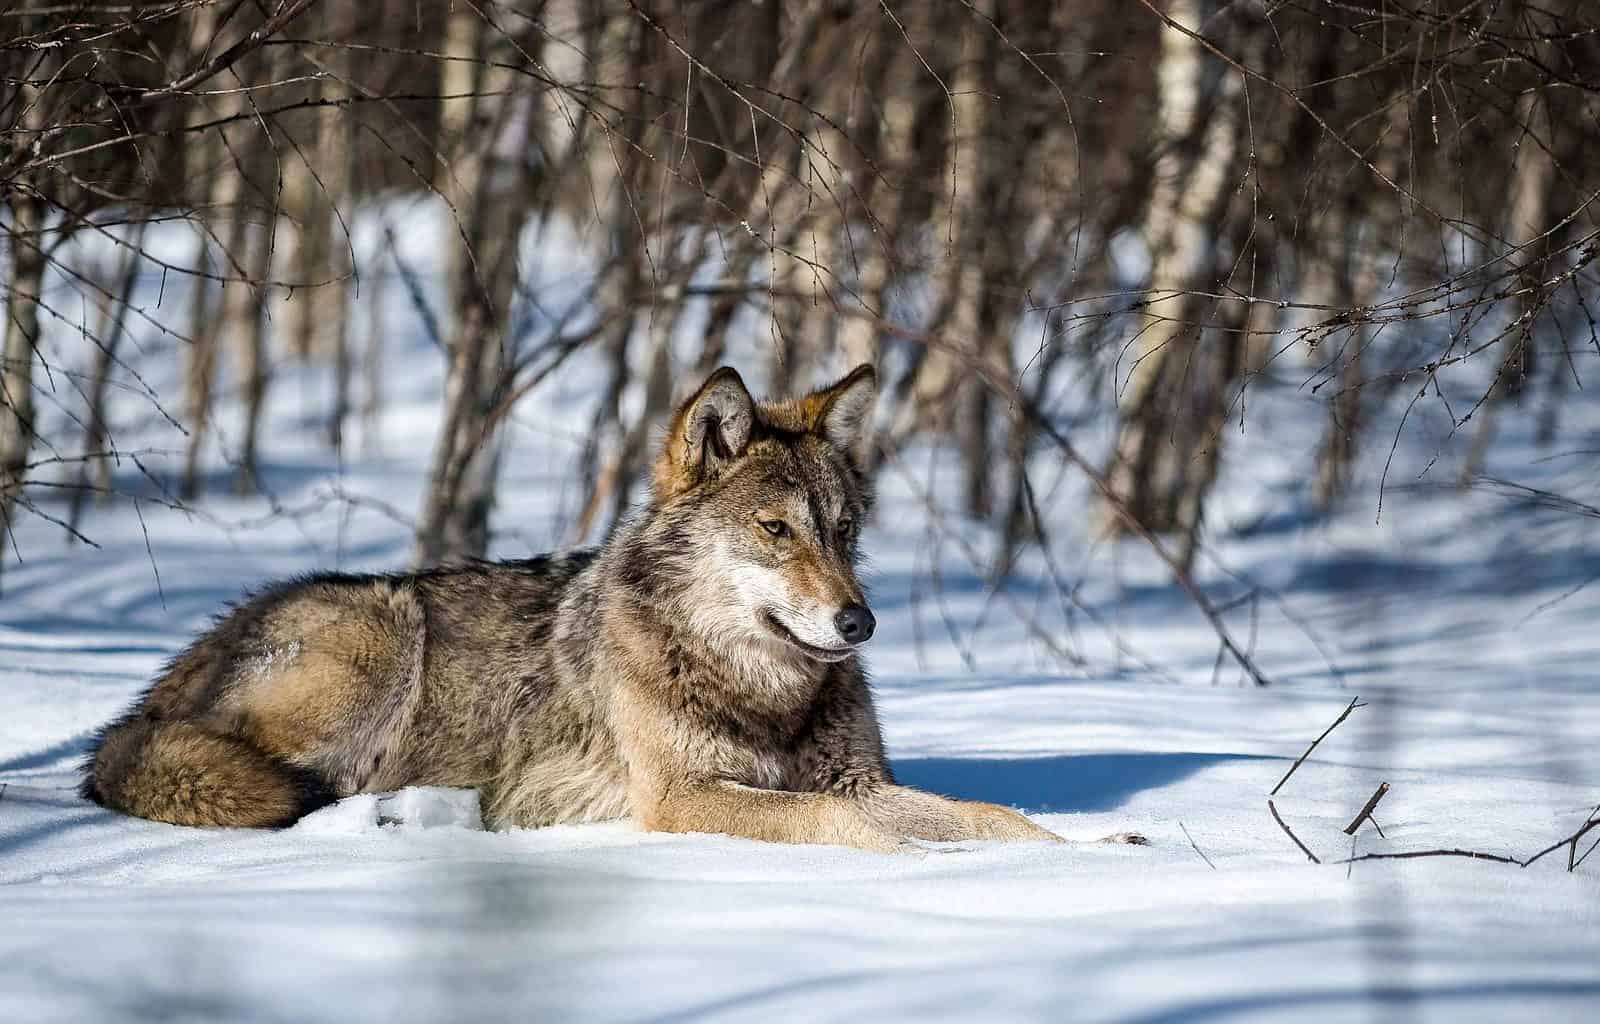 Wolf in Italy: Under threat!